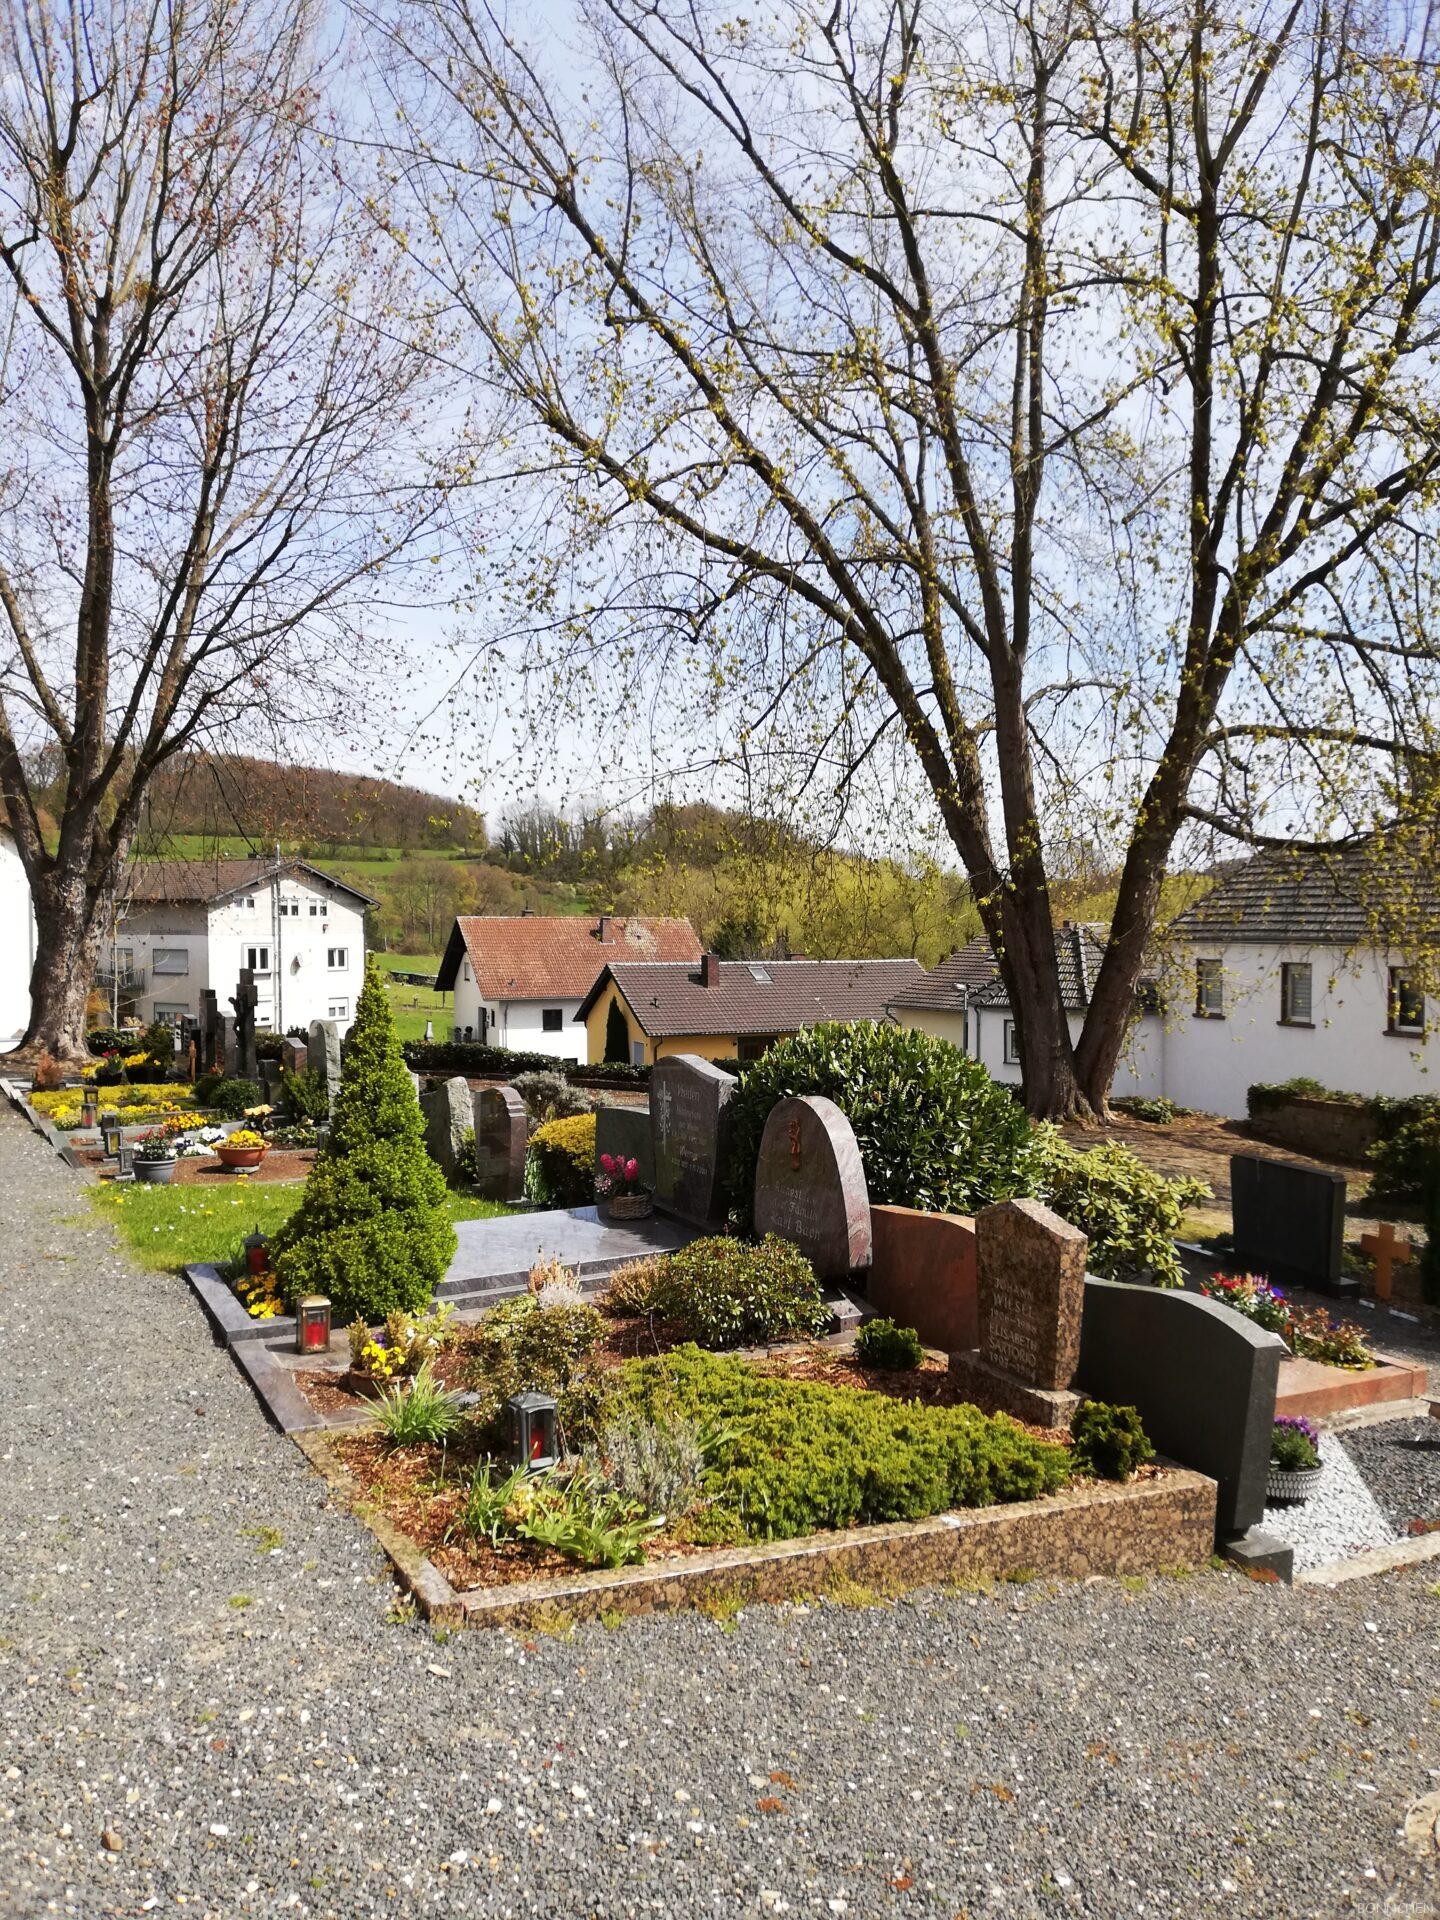 Friedhof an der Heiligen drei Könige Kirche